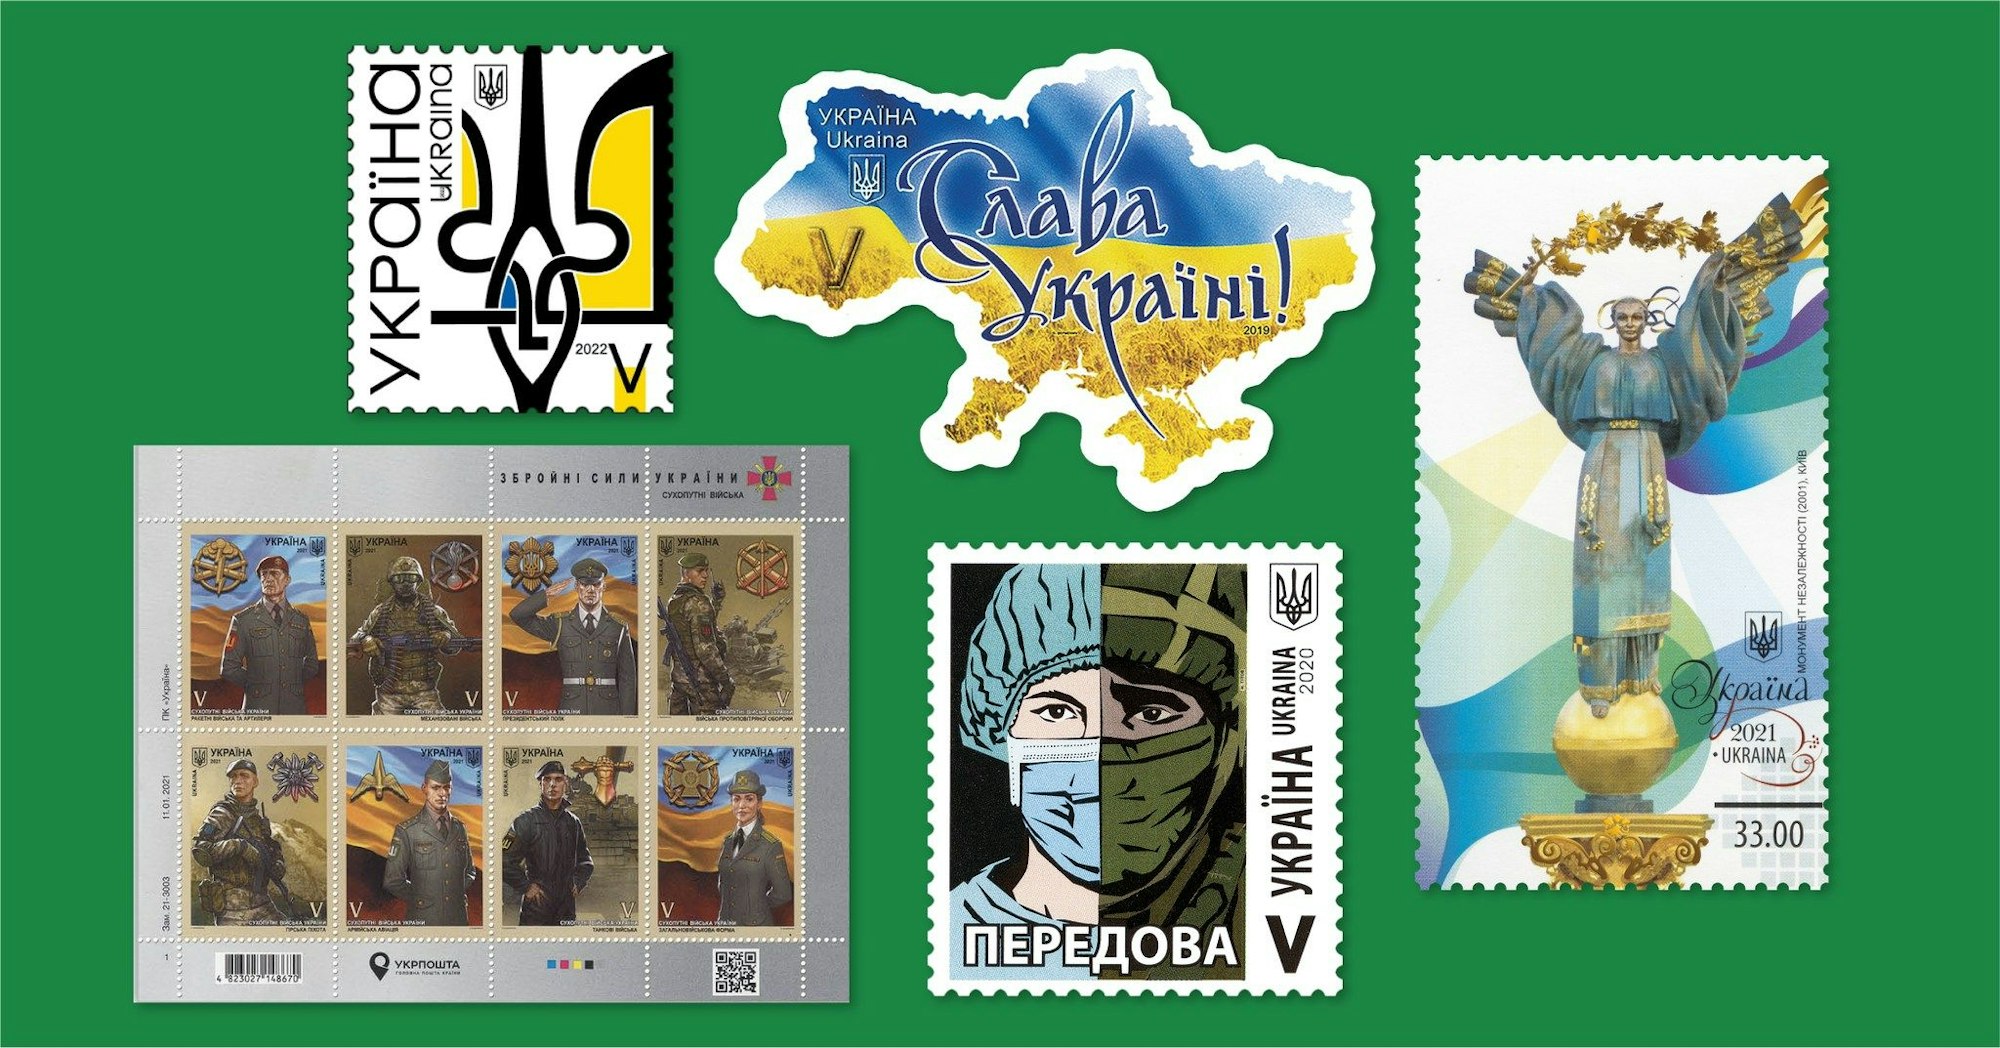 Briefmarken als Symbol des ukrainischen Widerstandes gegen Russland.